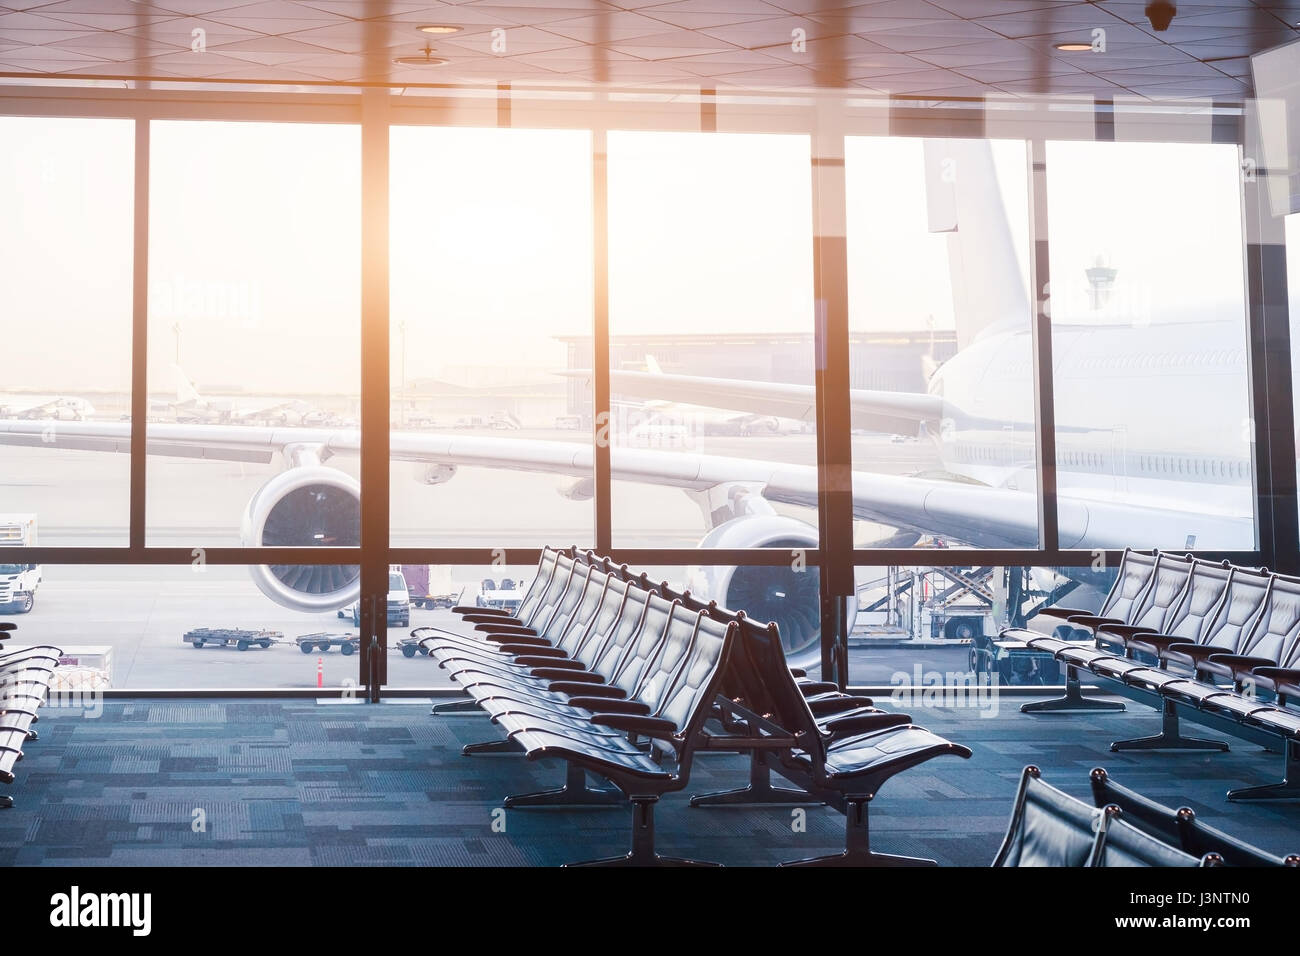 L'aéroport d'embarquement vide salon avec rangées de sièges et des fenêtres avec la vue d'un gros aéronef prêt à voler Banque D'Images